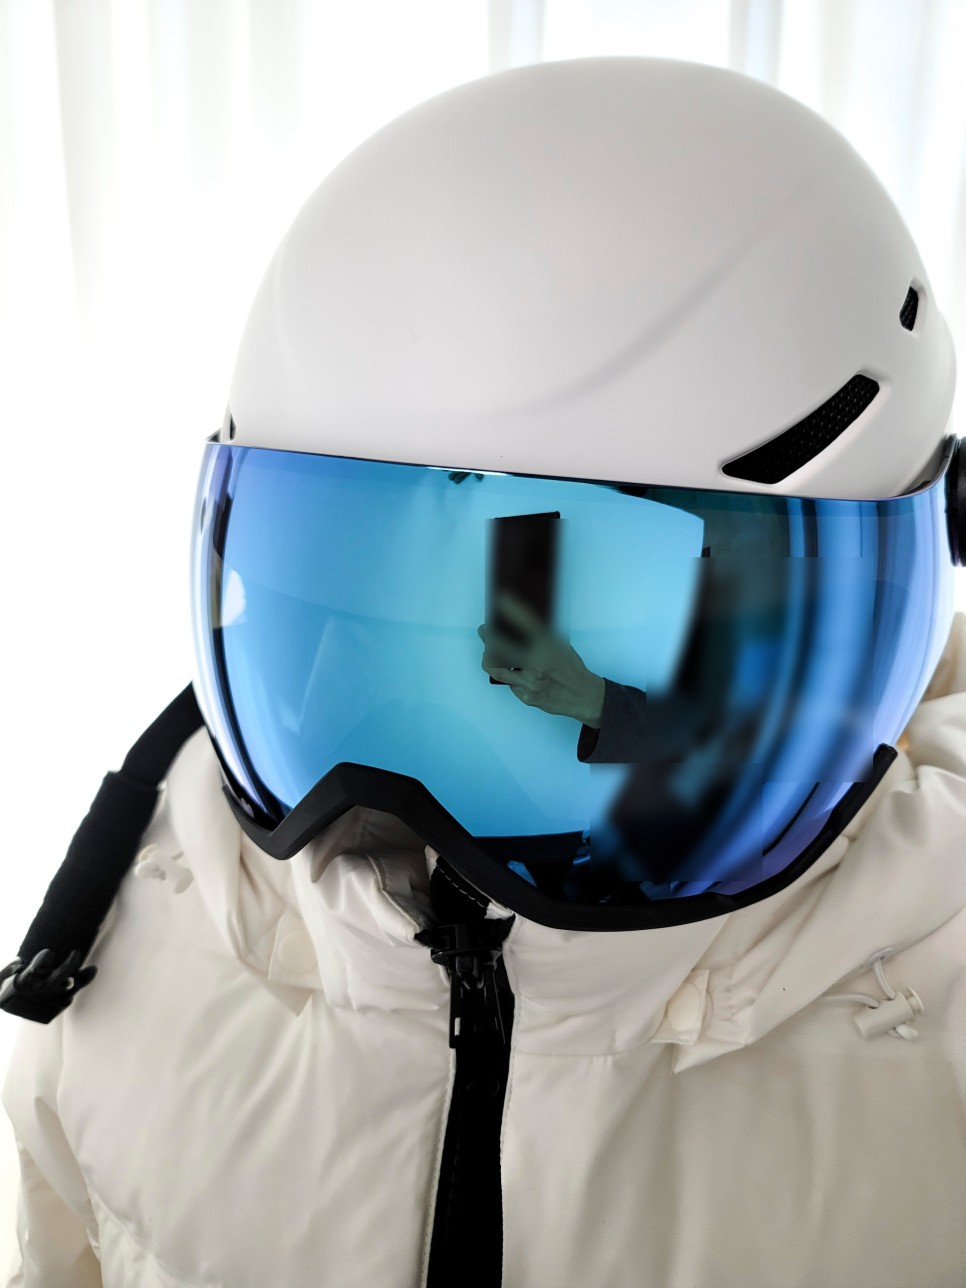 톰디어 스키고글 탈부착 스키헬멧 스노우보드헬멧 스키장 준비물